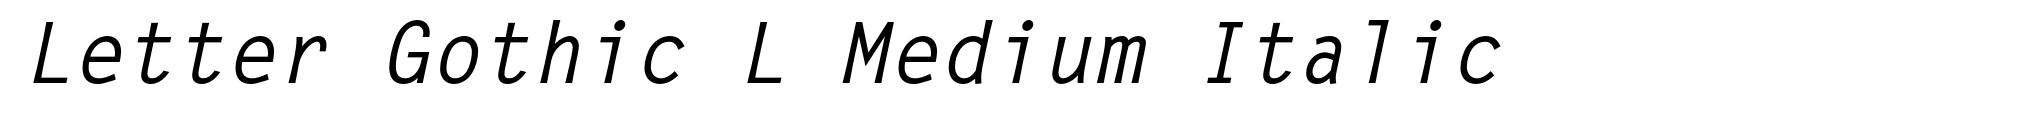 Letter Gothic L Medium Italic image